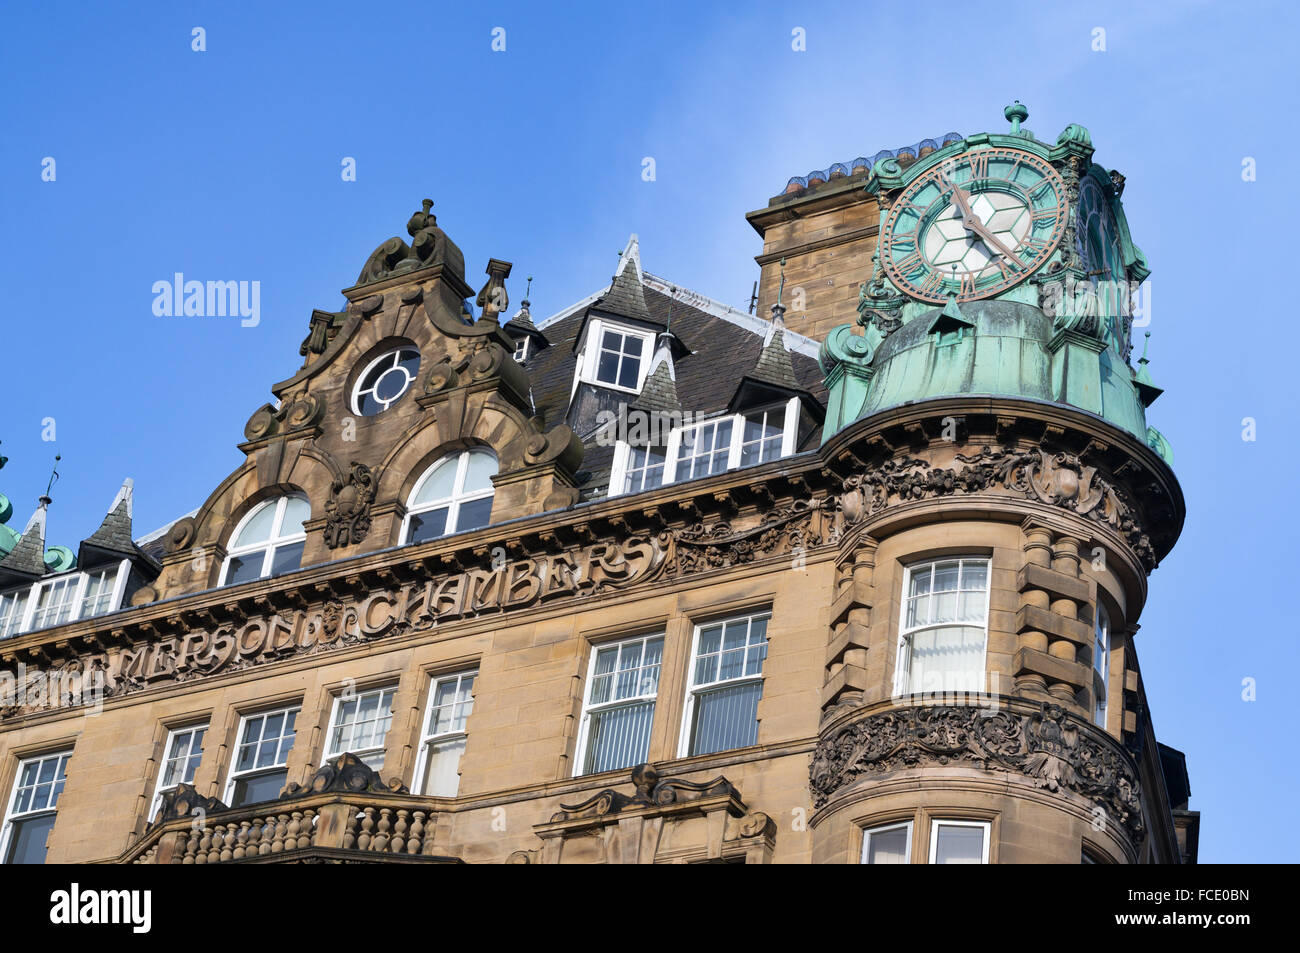 Des détails architecturaux de l'art nouveau 1903 Emerson Édifice Chambers, Newcastle upon Tyne, Angleterre du Nord-Est, Royaume-Uni Banque D'Images